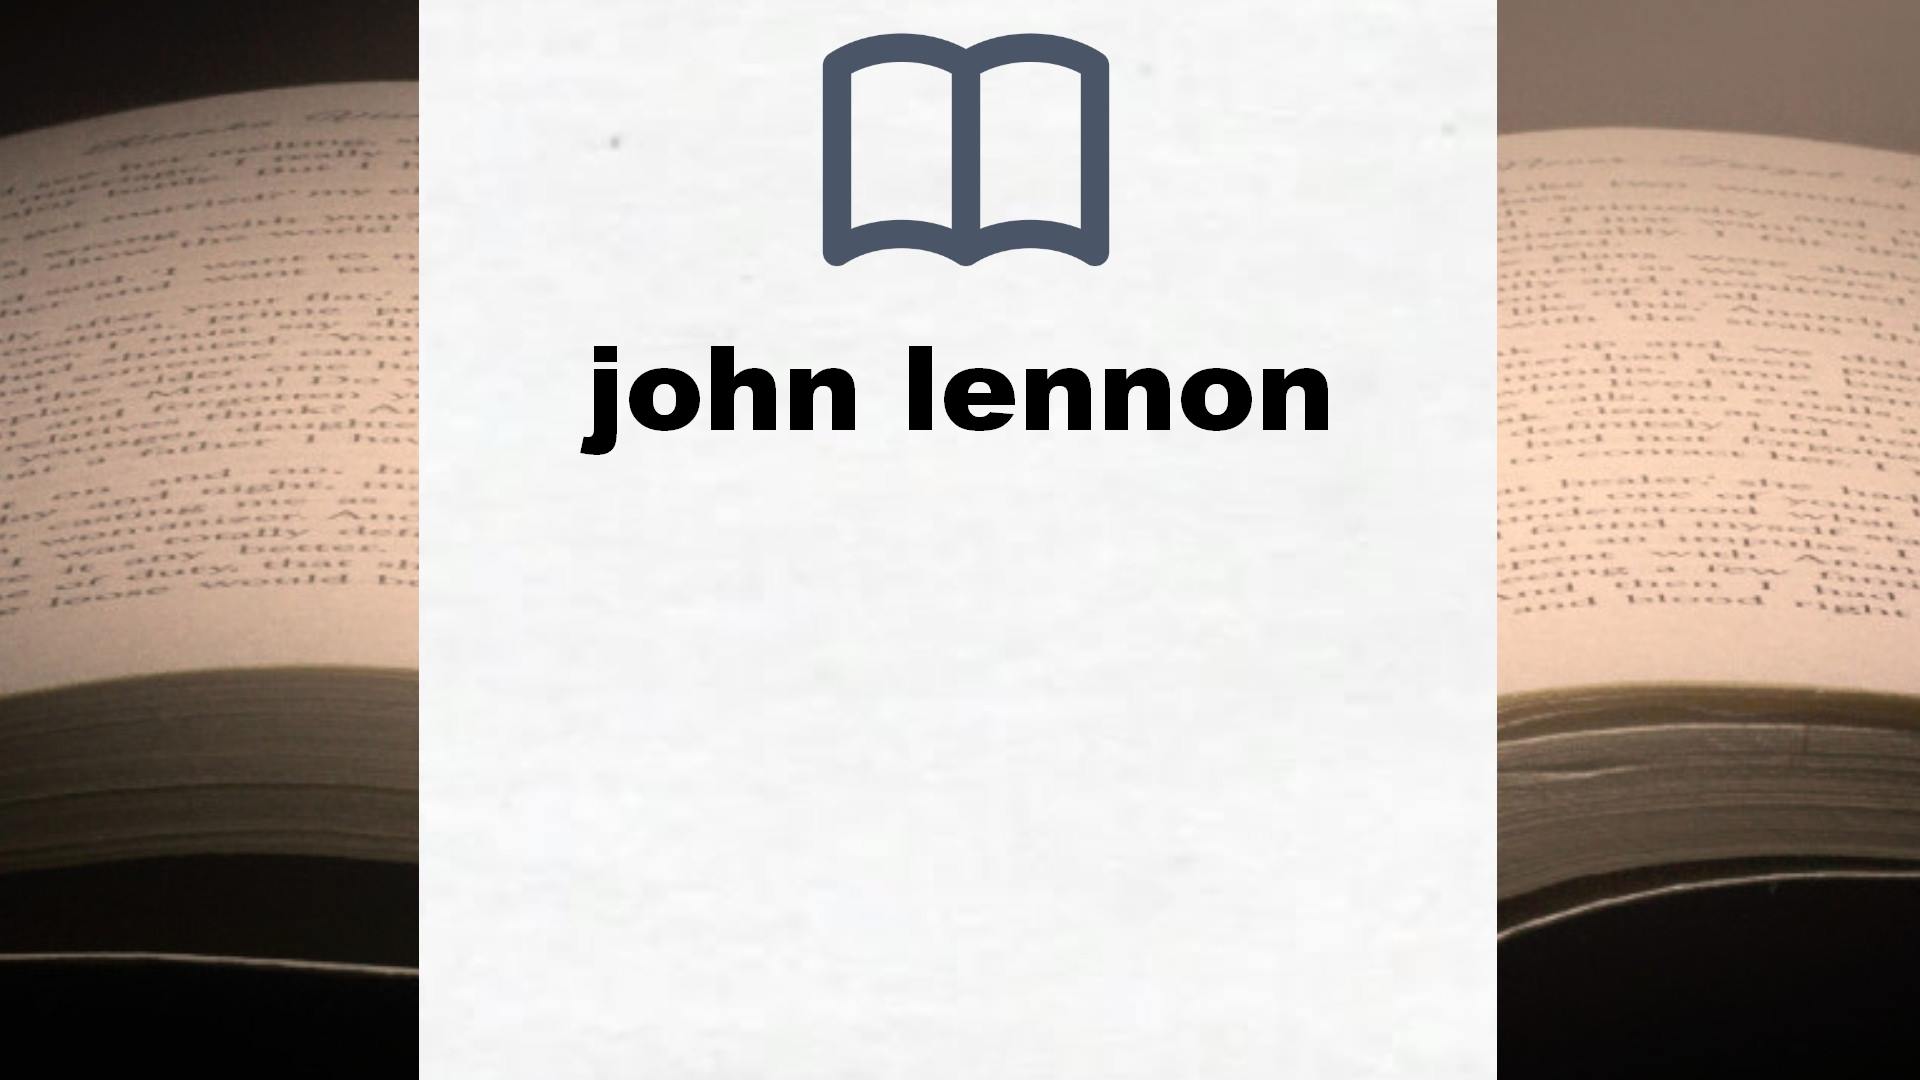 Libros sobre john lennon